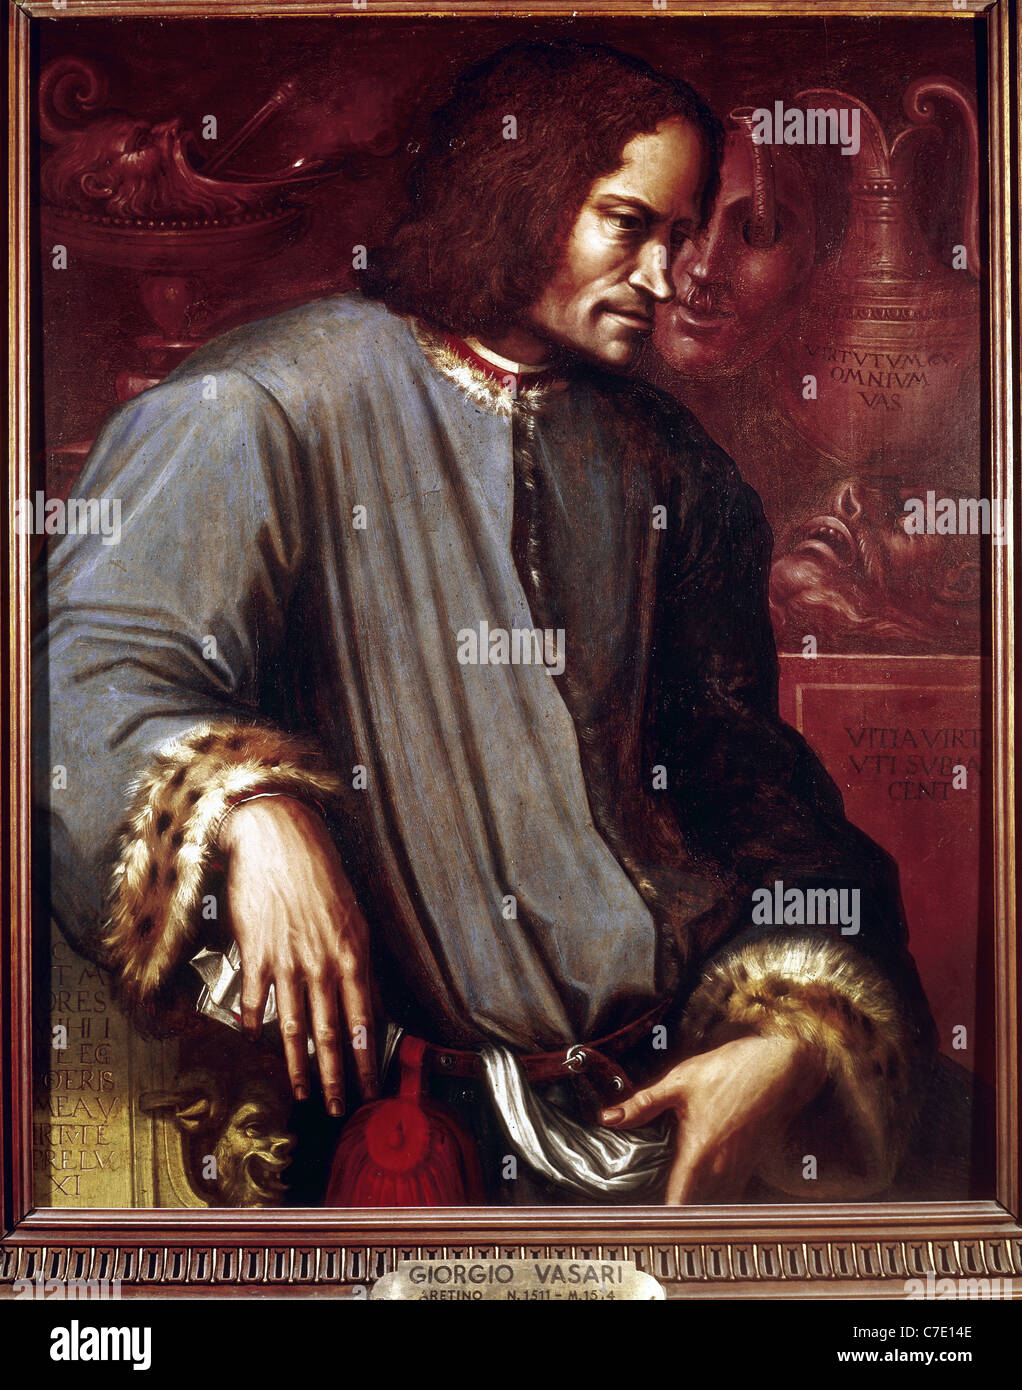 Lorenzo de Medici, conocido el magnífico (1449-1492). Retrato por Giorgio Vasari. La Galería de los Uffizi. Florencia. Italia. Foto de stock